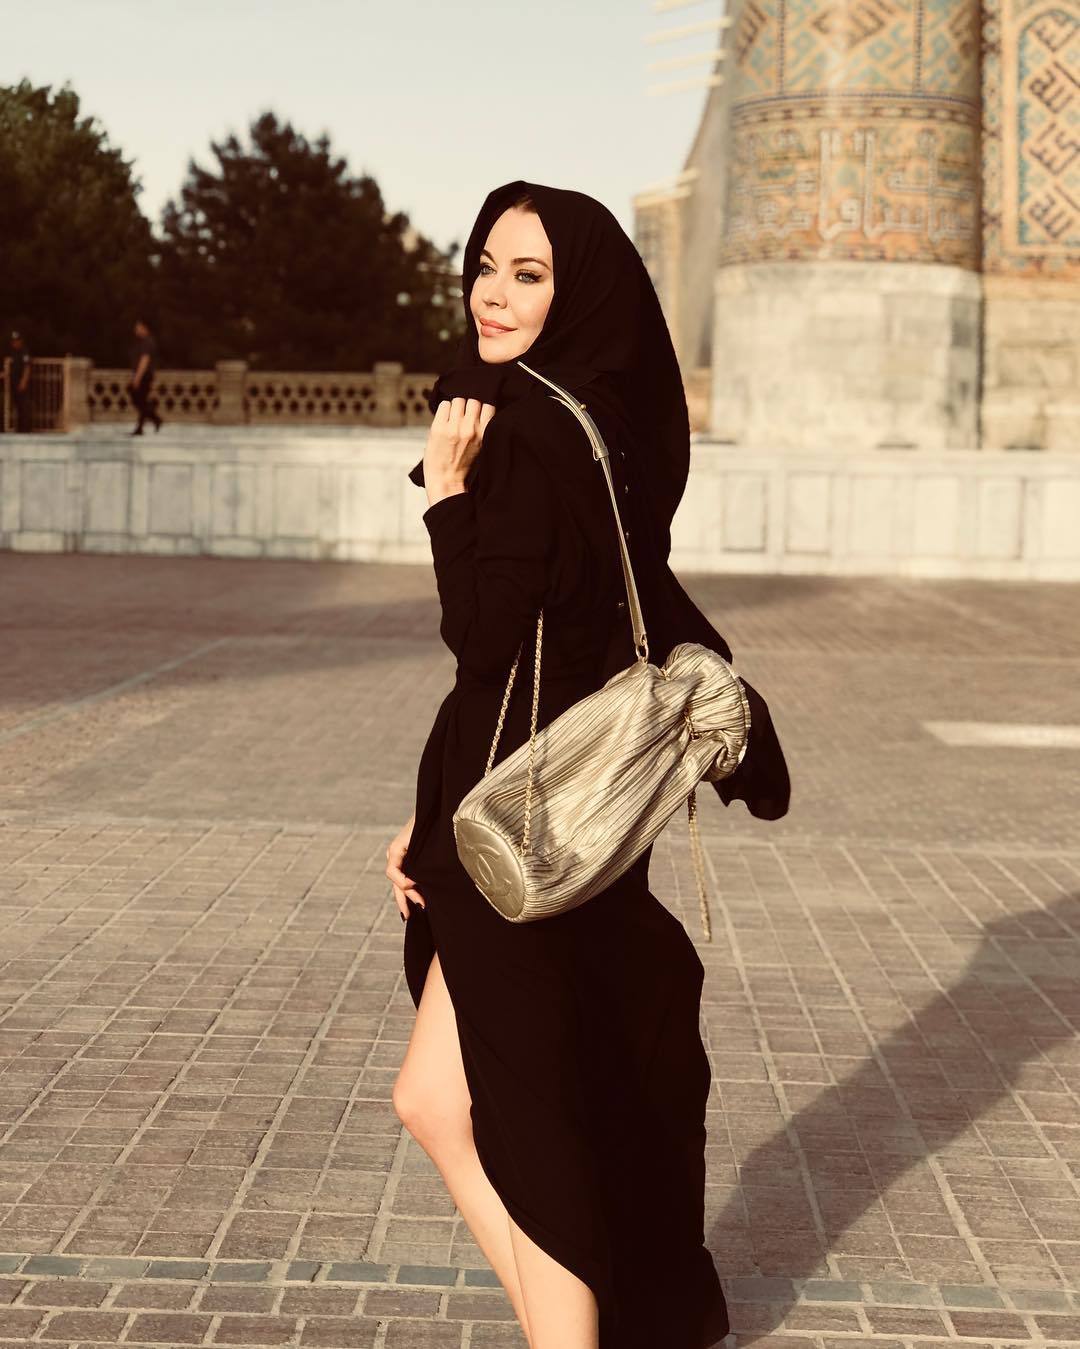 ulyanastreetgame: Ulyana Sergeenko in Uzbekistan, May 2018. #UlyanaWears Ulyana Sergeenko